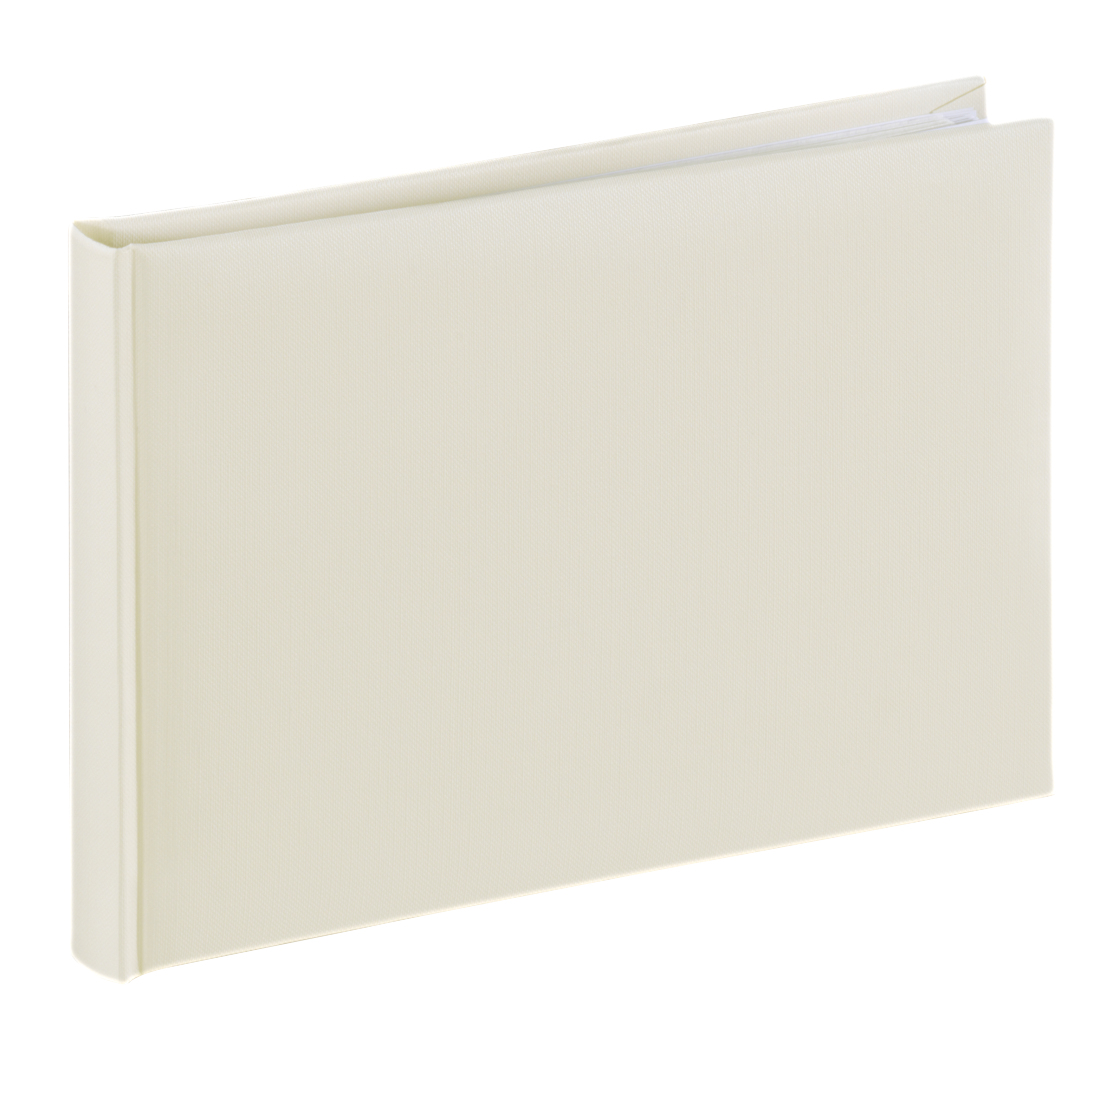 Hama Buch-Album Fine Art, 24x17 cm, 36 weiße Seiten, Sand